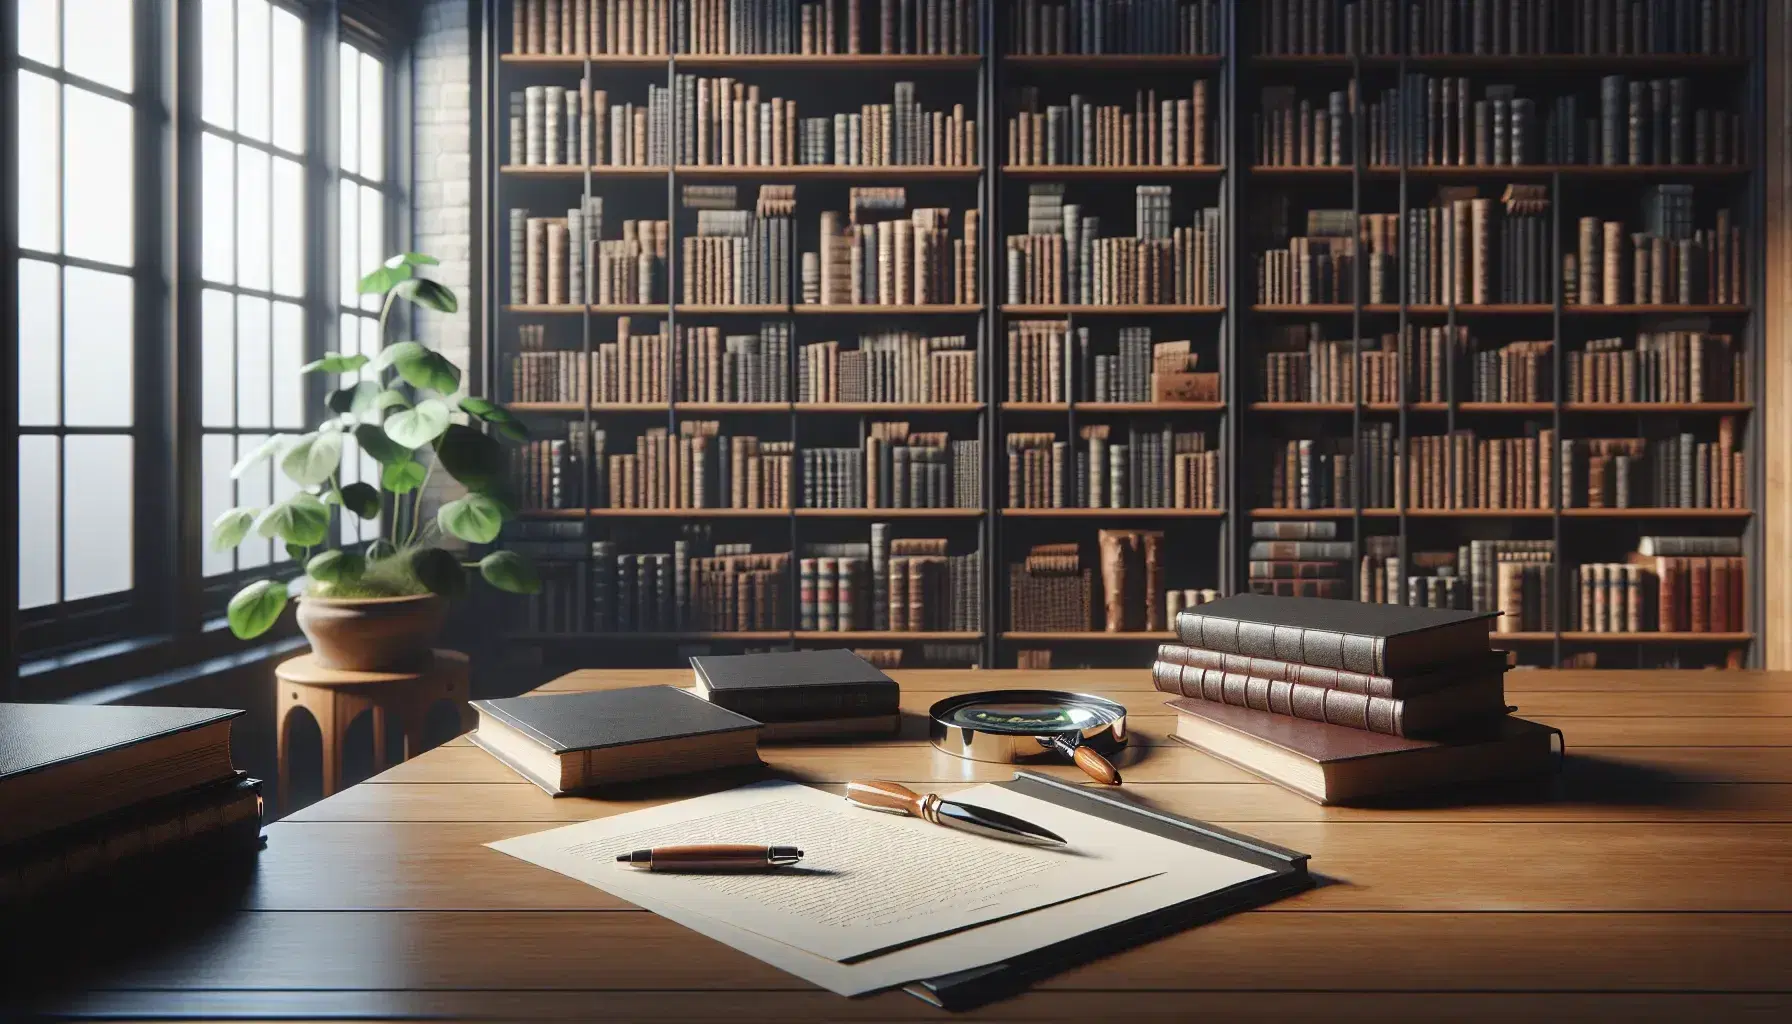 Biblioteca iluminada con estanterías de madera oscura llenas de libros, mesa con papeles desordenados, pluma y lupa, planta verde al fondo.